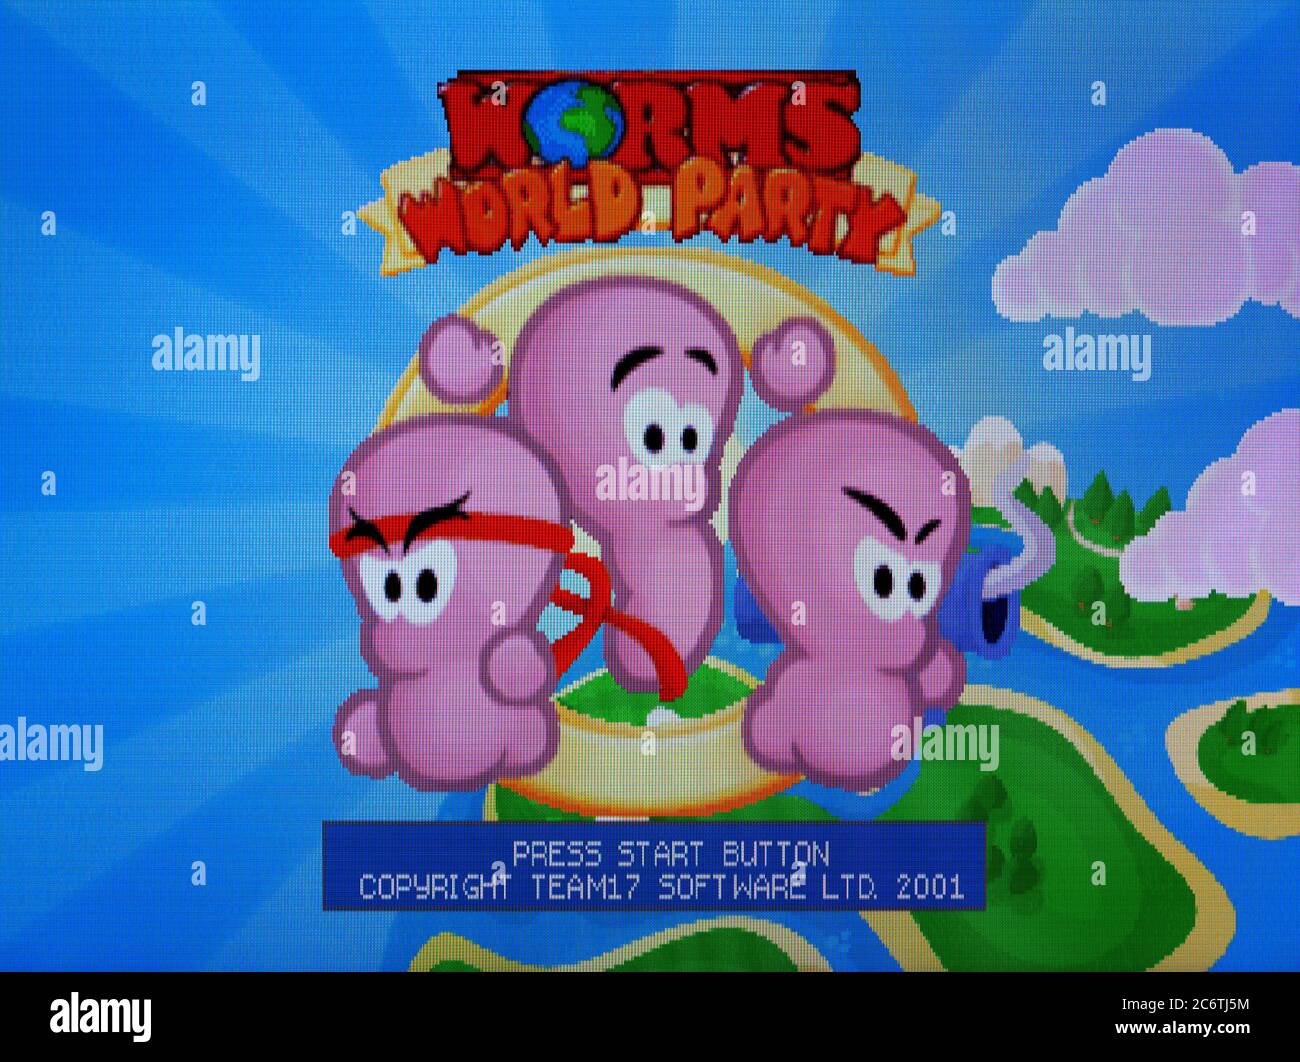 Worms World Party – Sony PlayStation 1 PS1 PSX – nur für redaktionelle  Verwendung Stockfotografie - Alamy